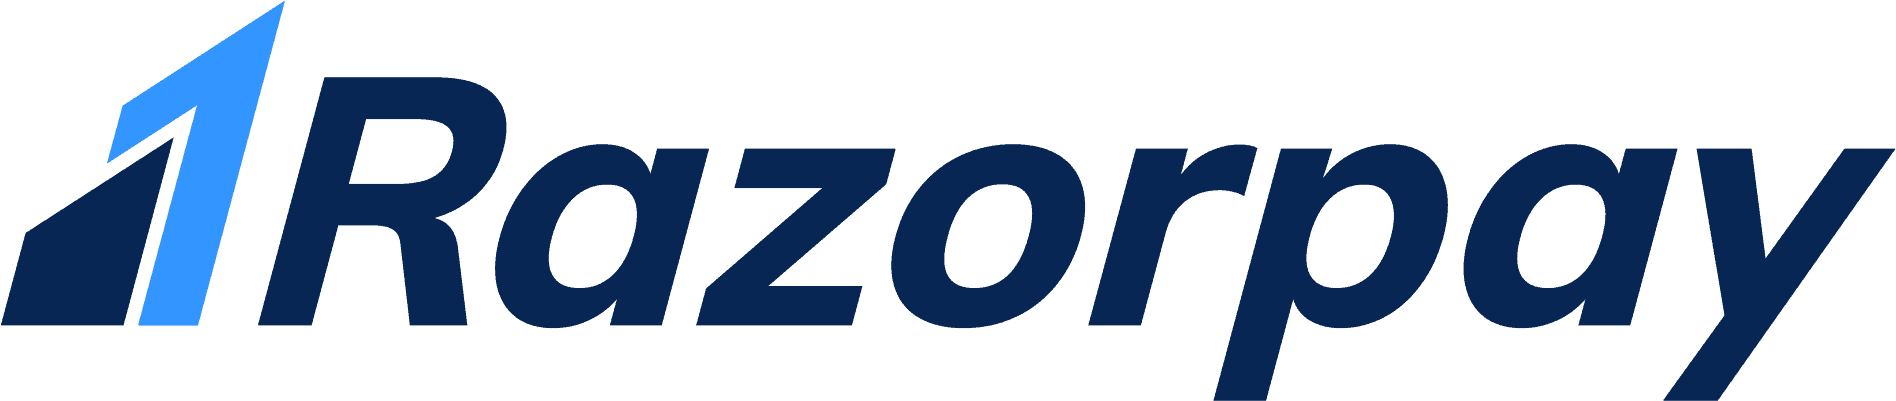 Razorpay logo